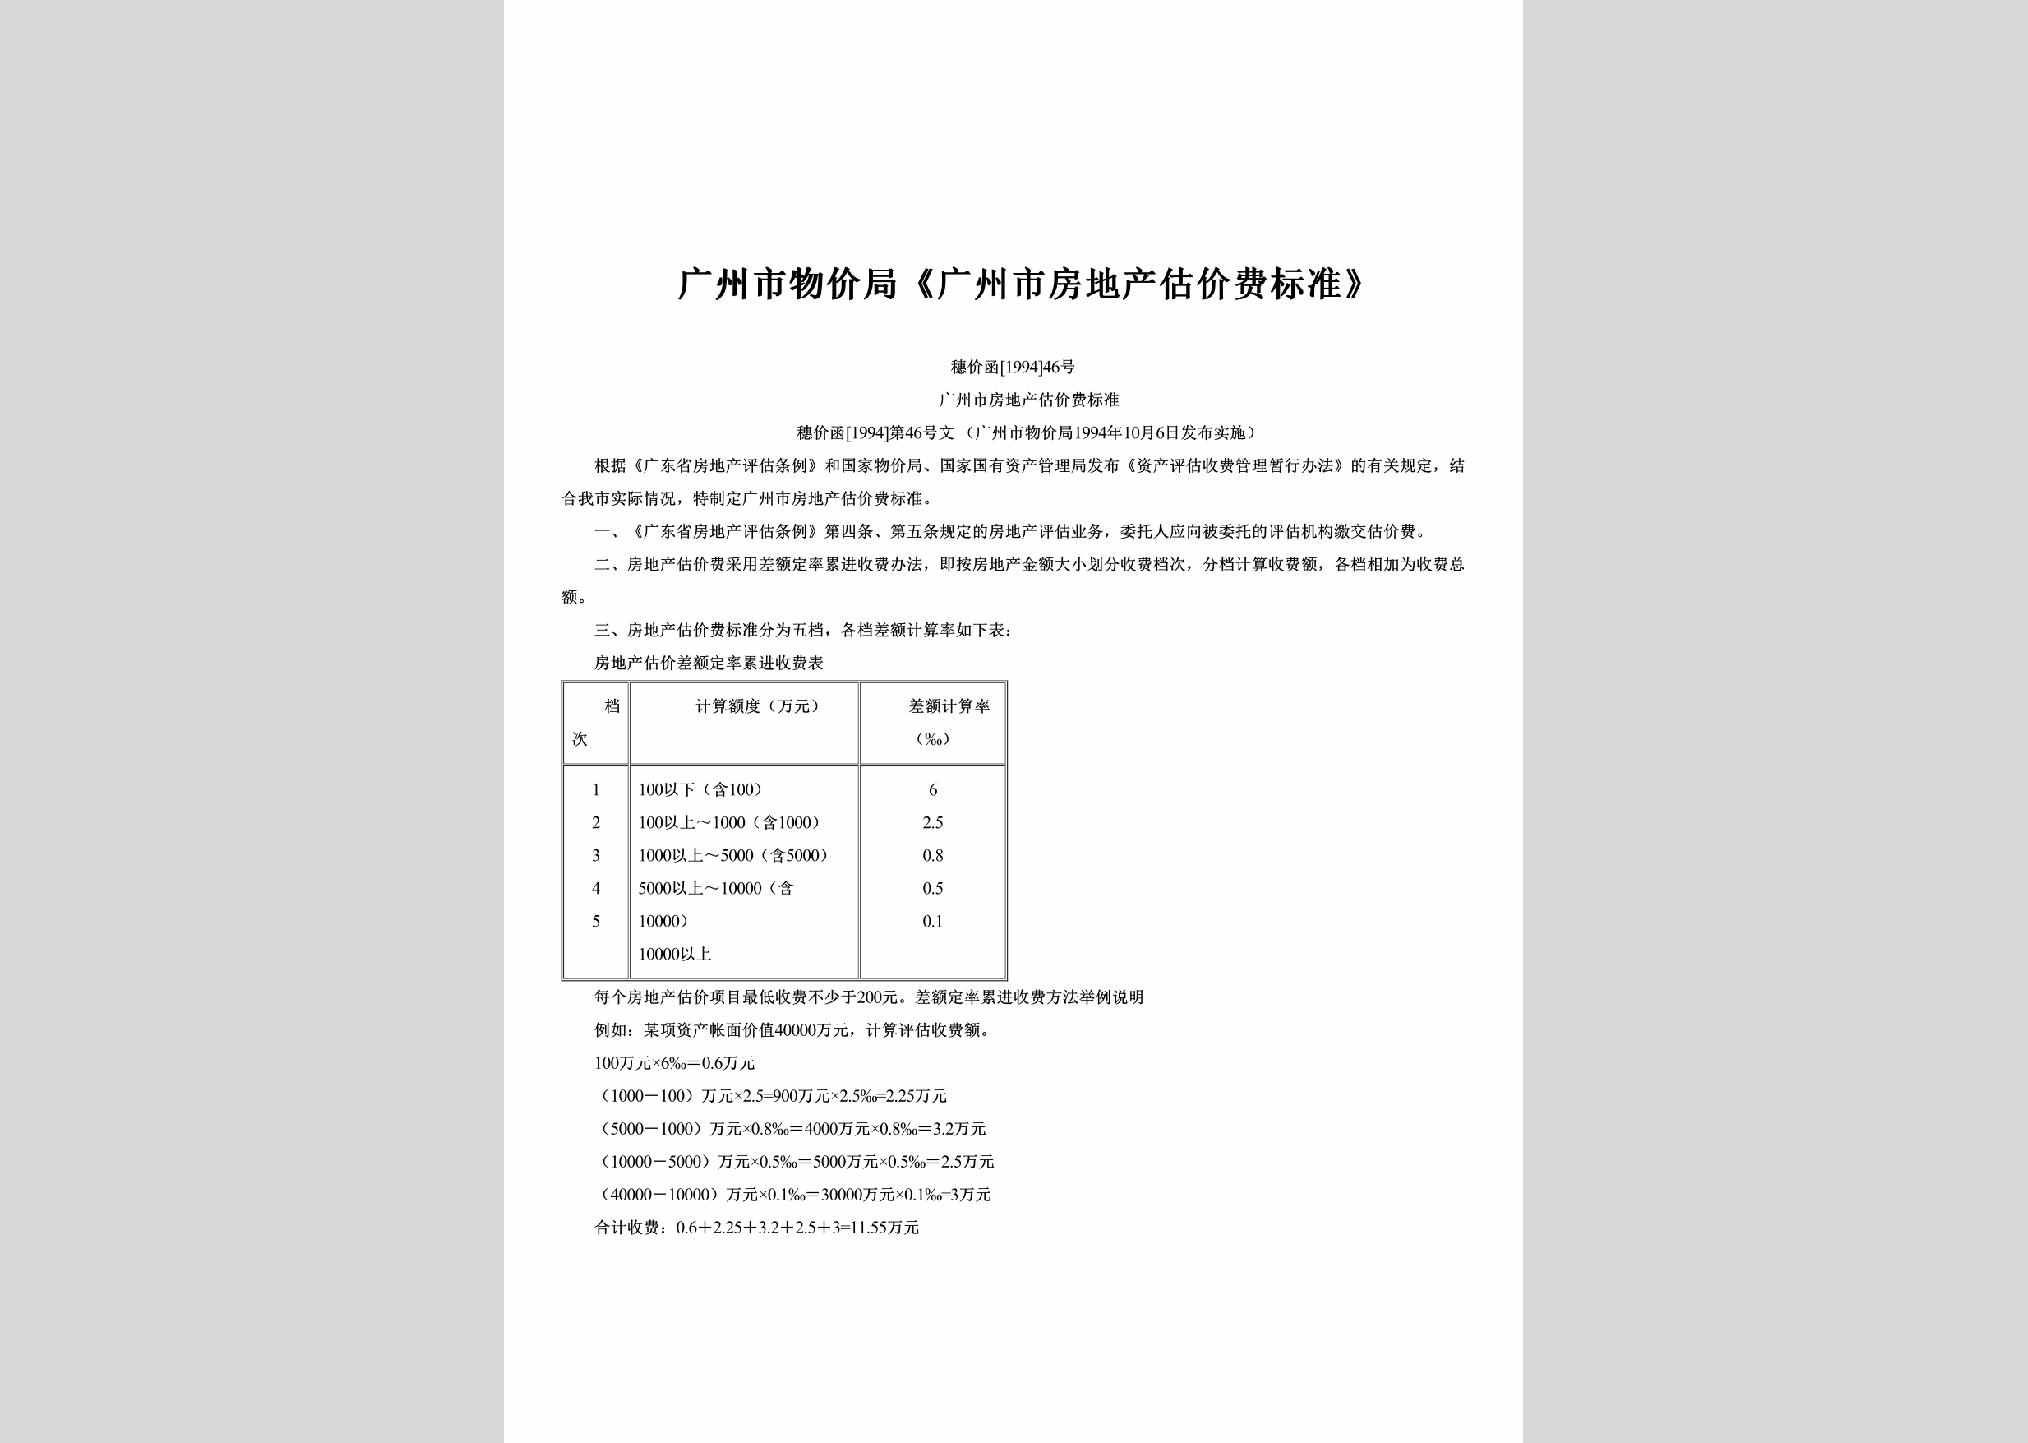 穗价函[1994]46号：《广州市房地产估价费标准》